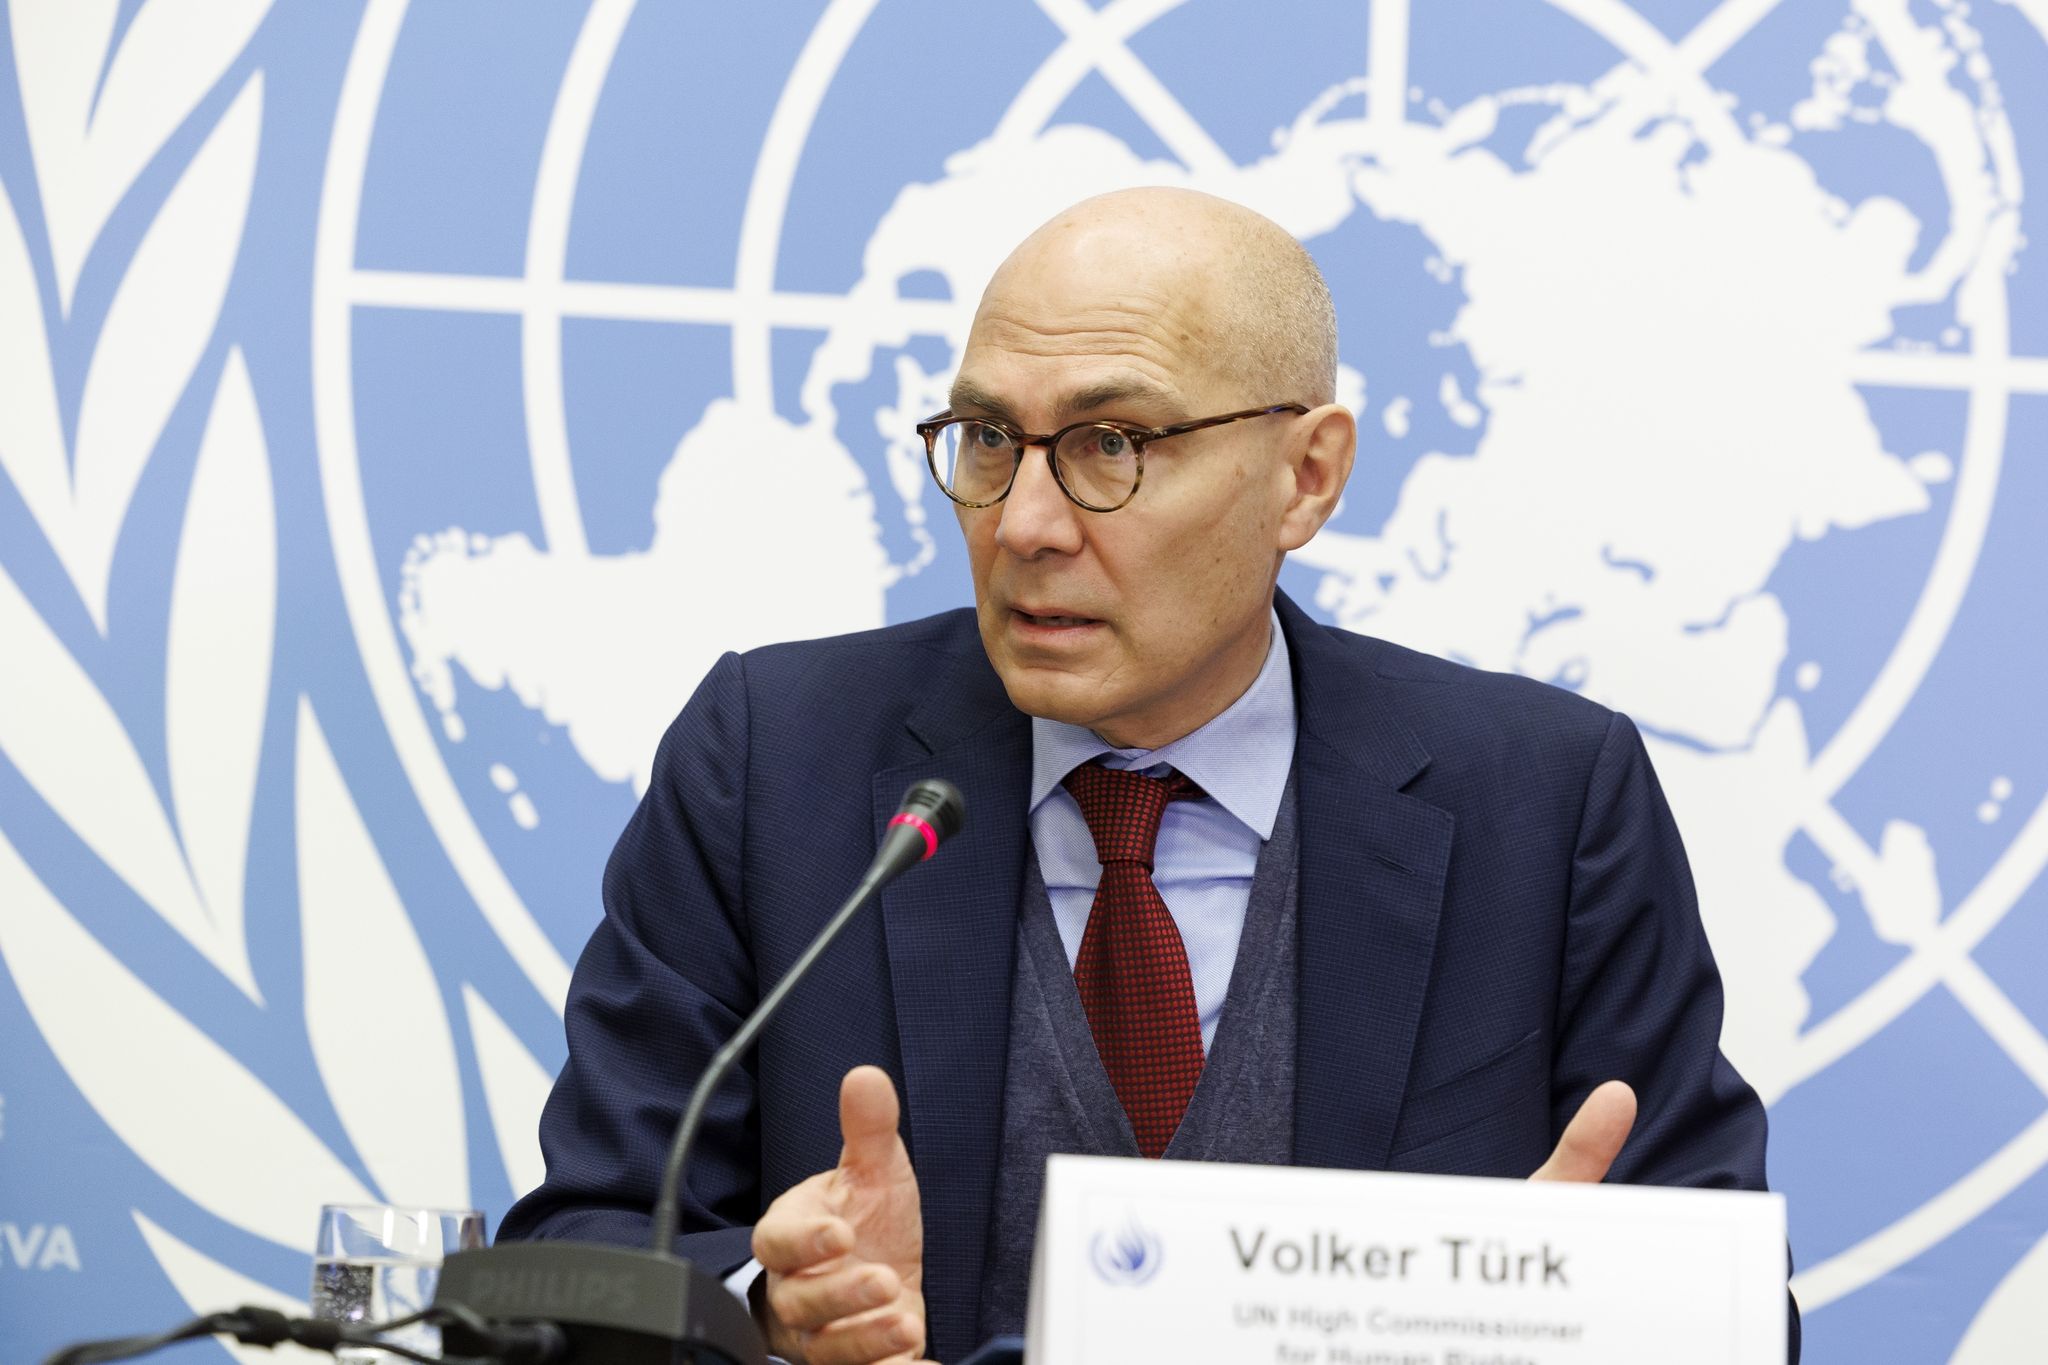 Der UNO-Hochkommissar für Menschenrechte, Volker Türk, sieht die Menschenrechte weltweit in Gefahr.